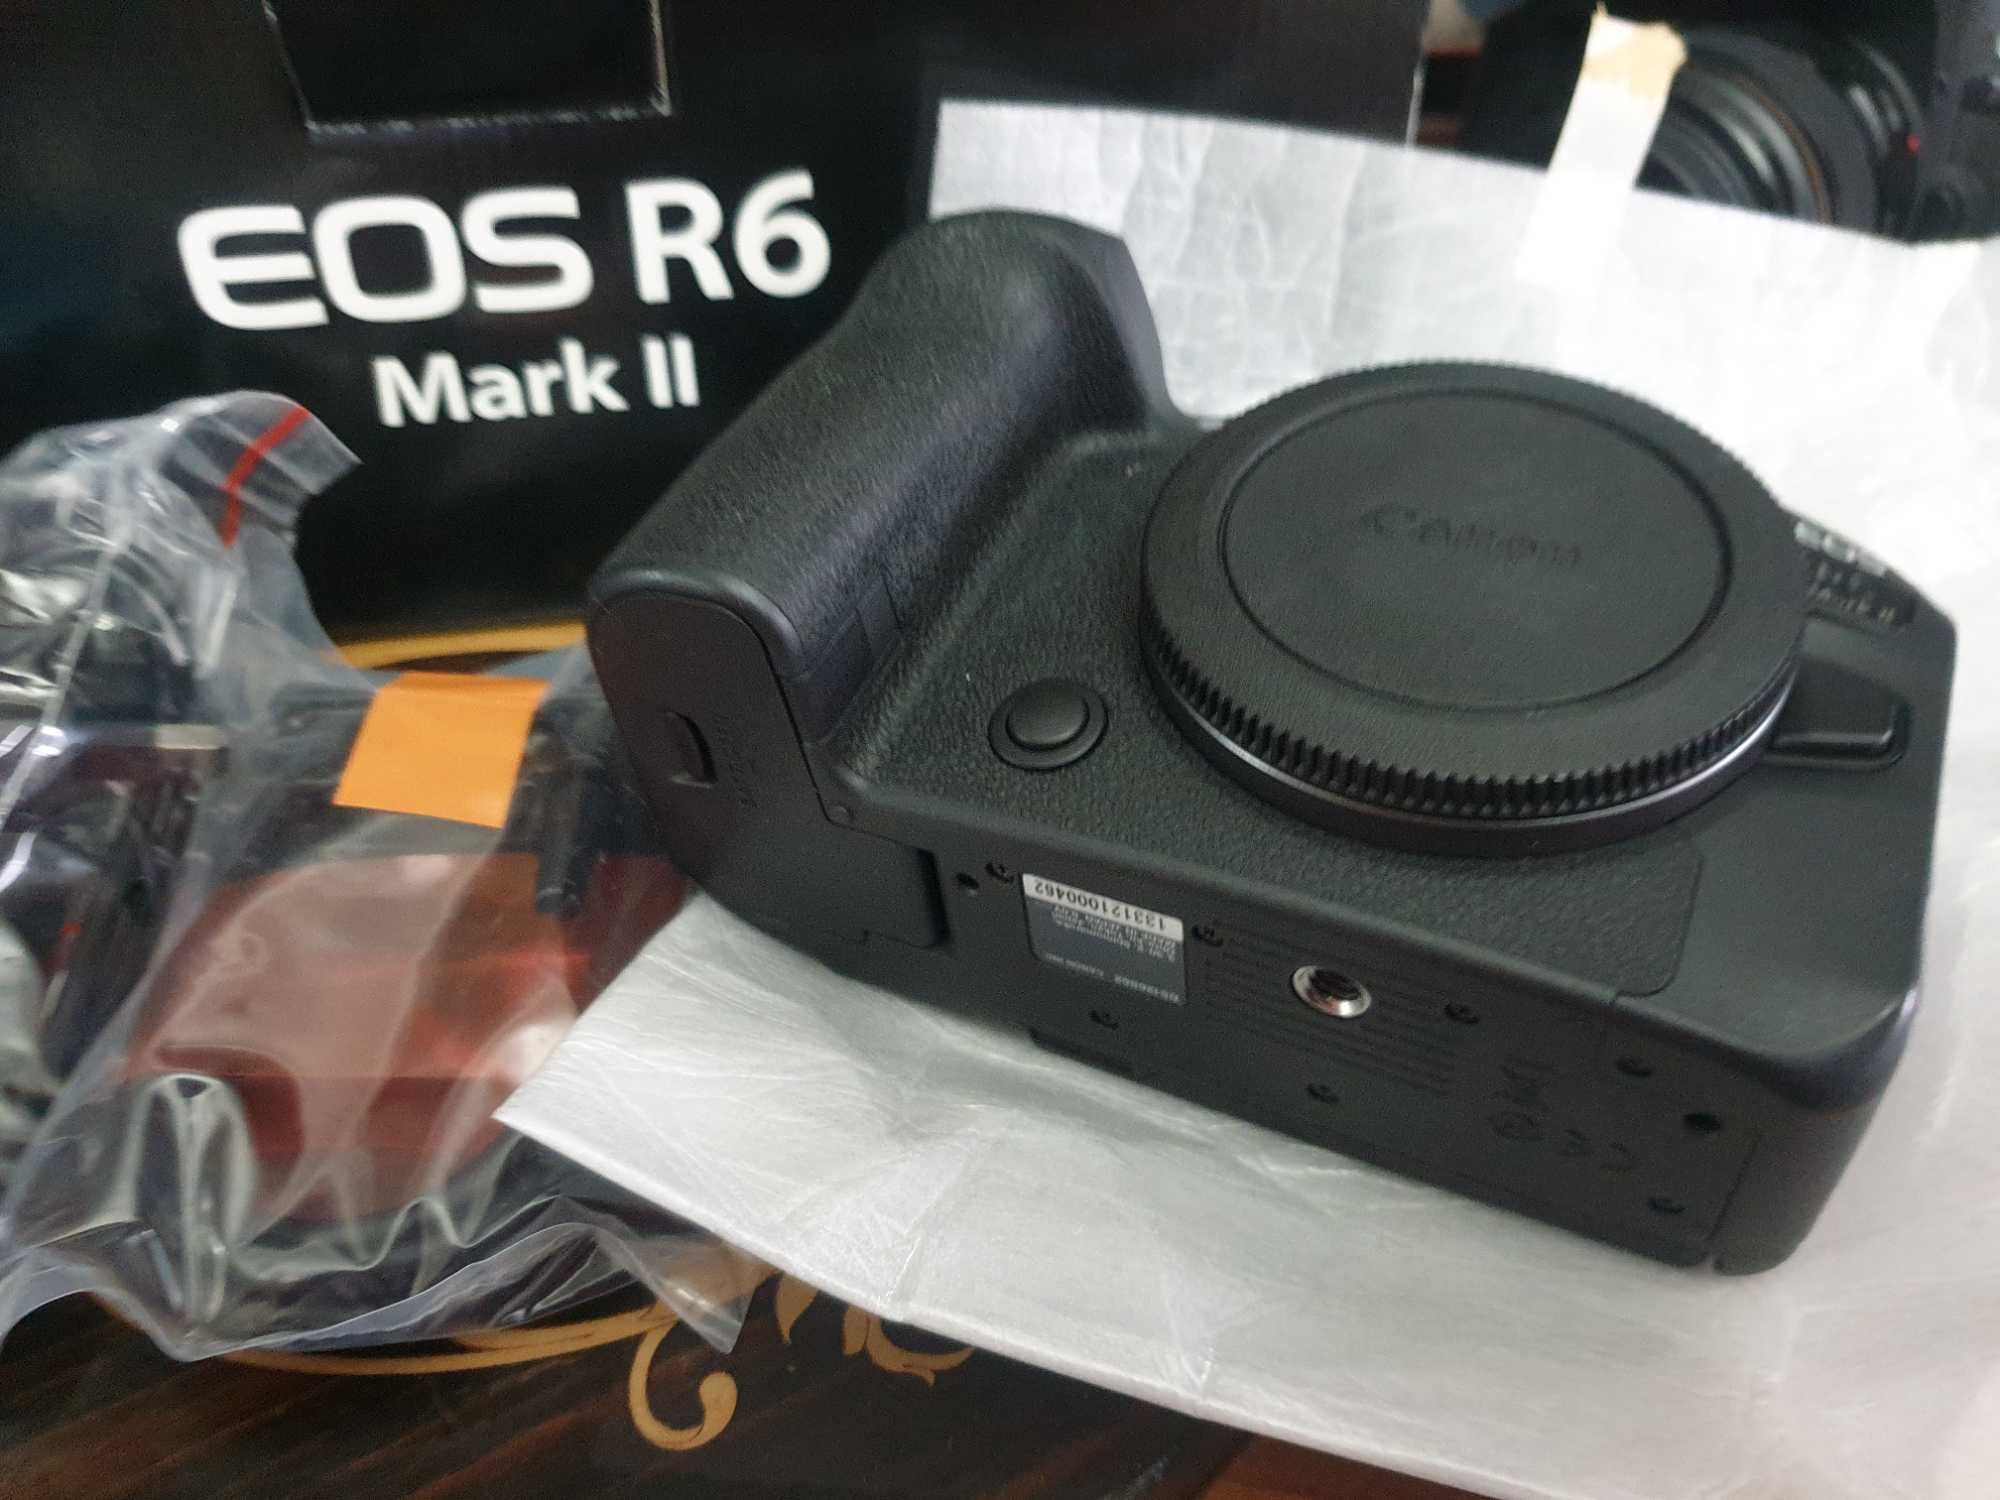 Продам Кенон R6 mark II в упаковке новый+адаптер в упаковке